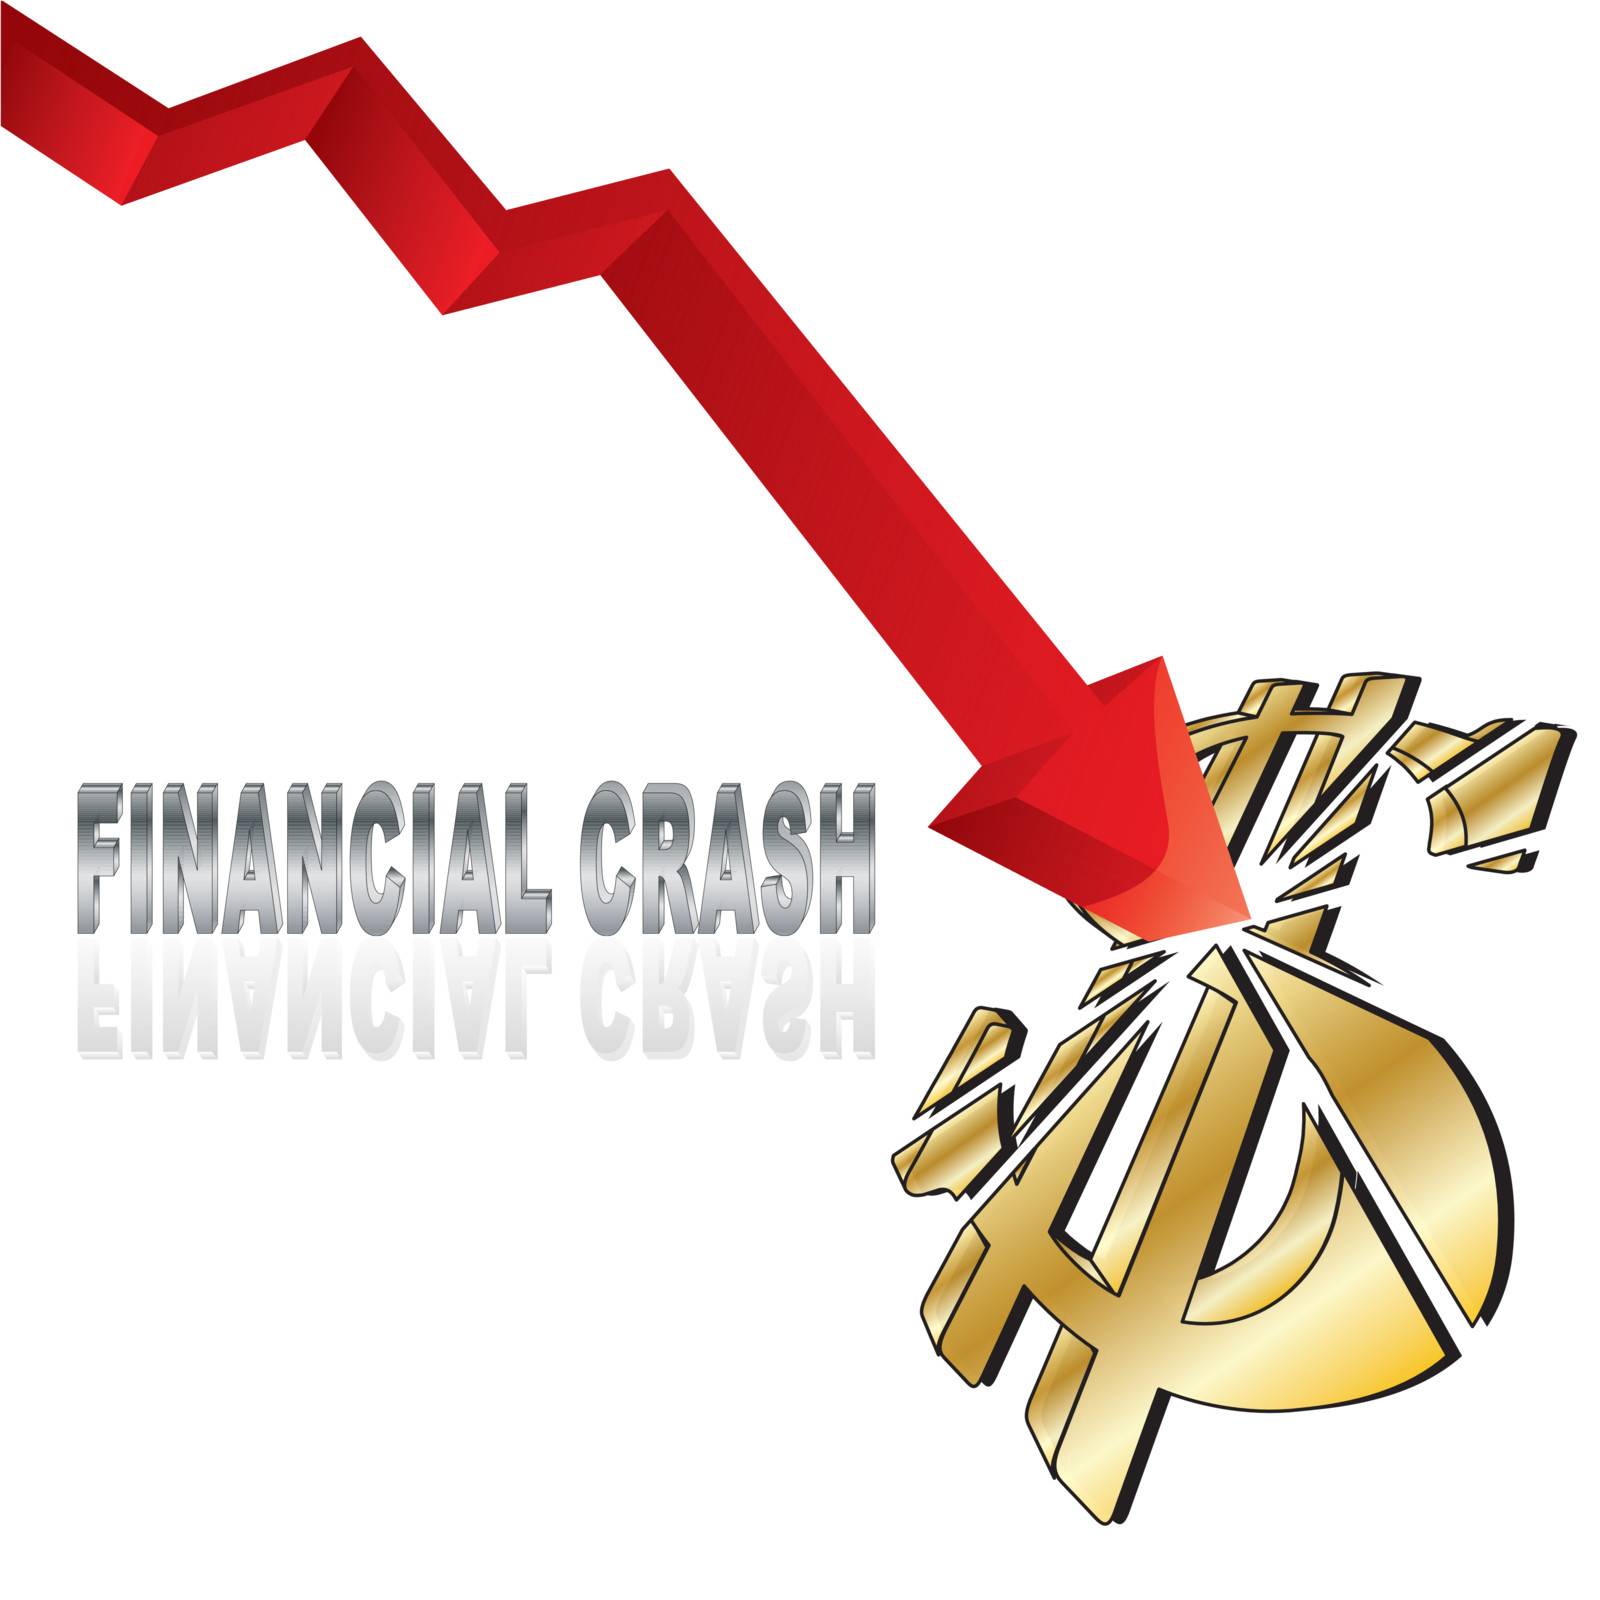 Financial crash by milinz